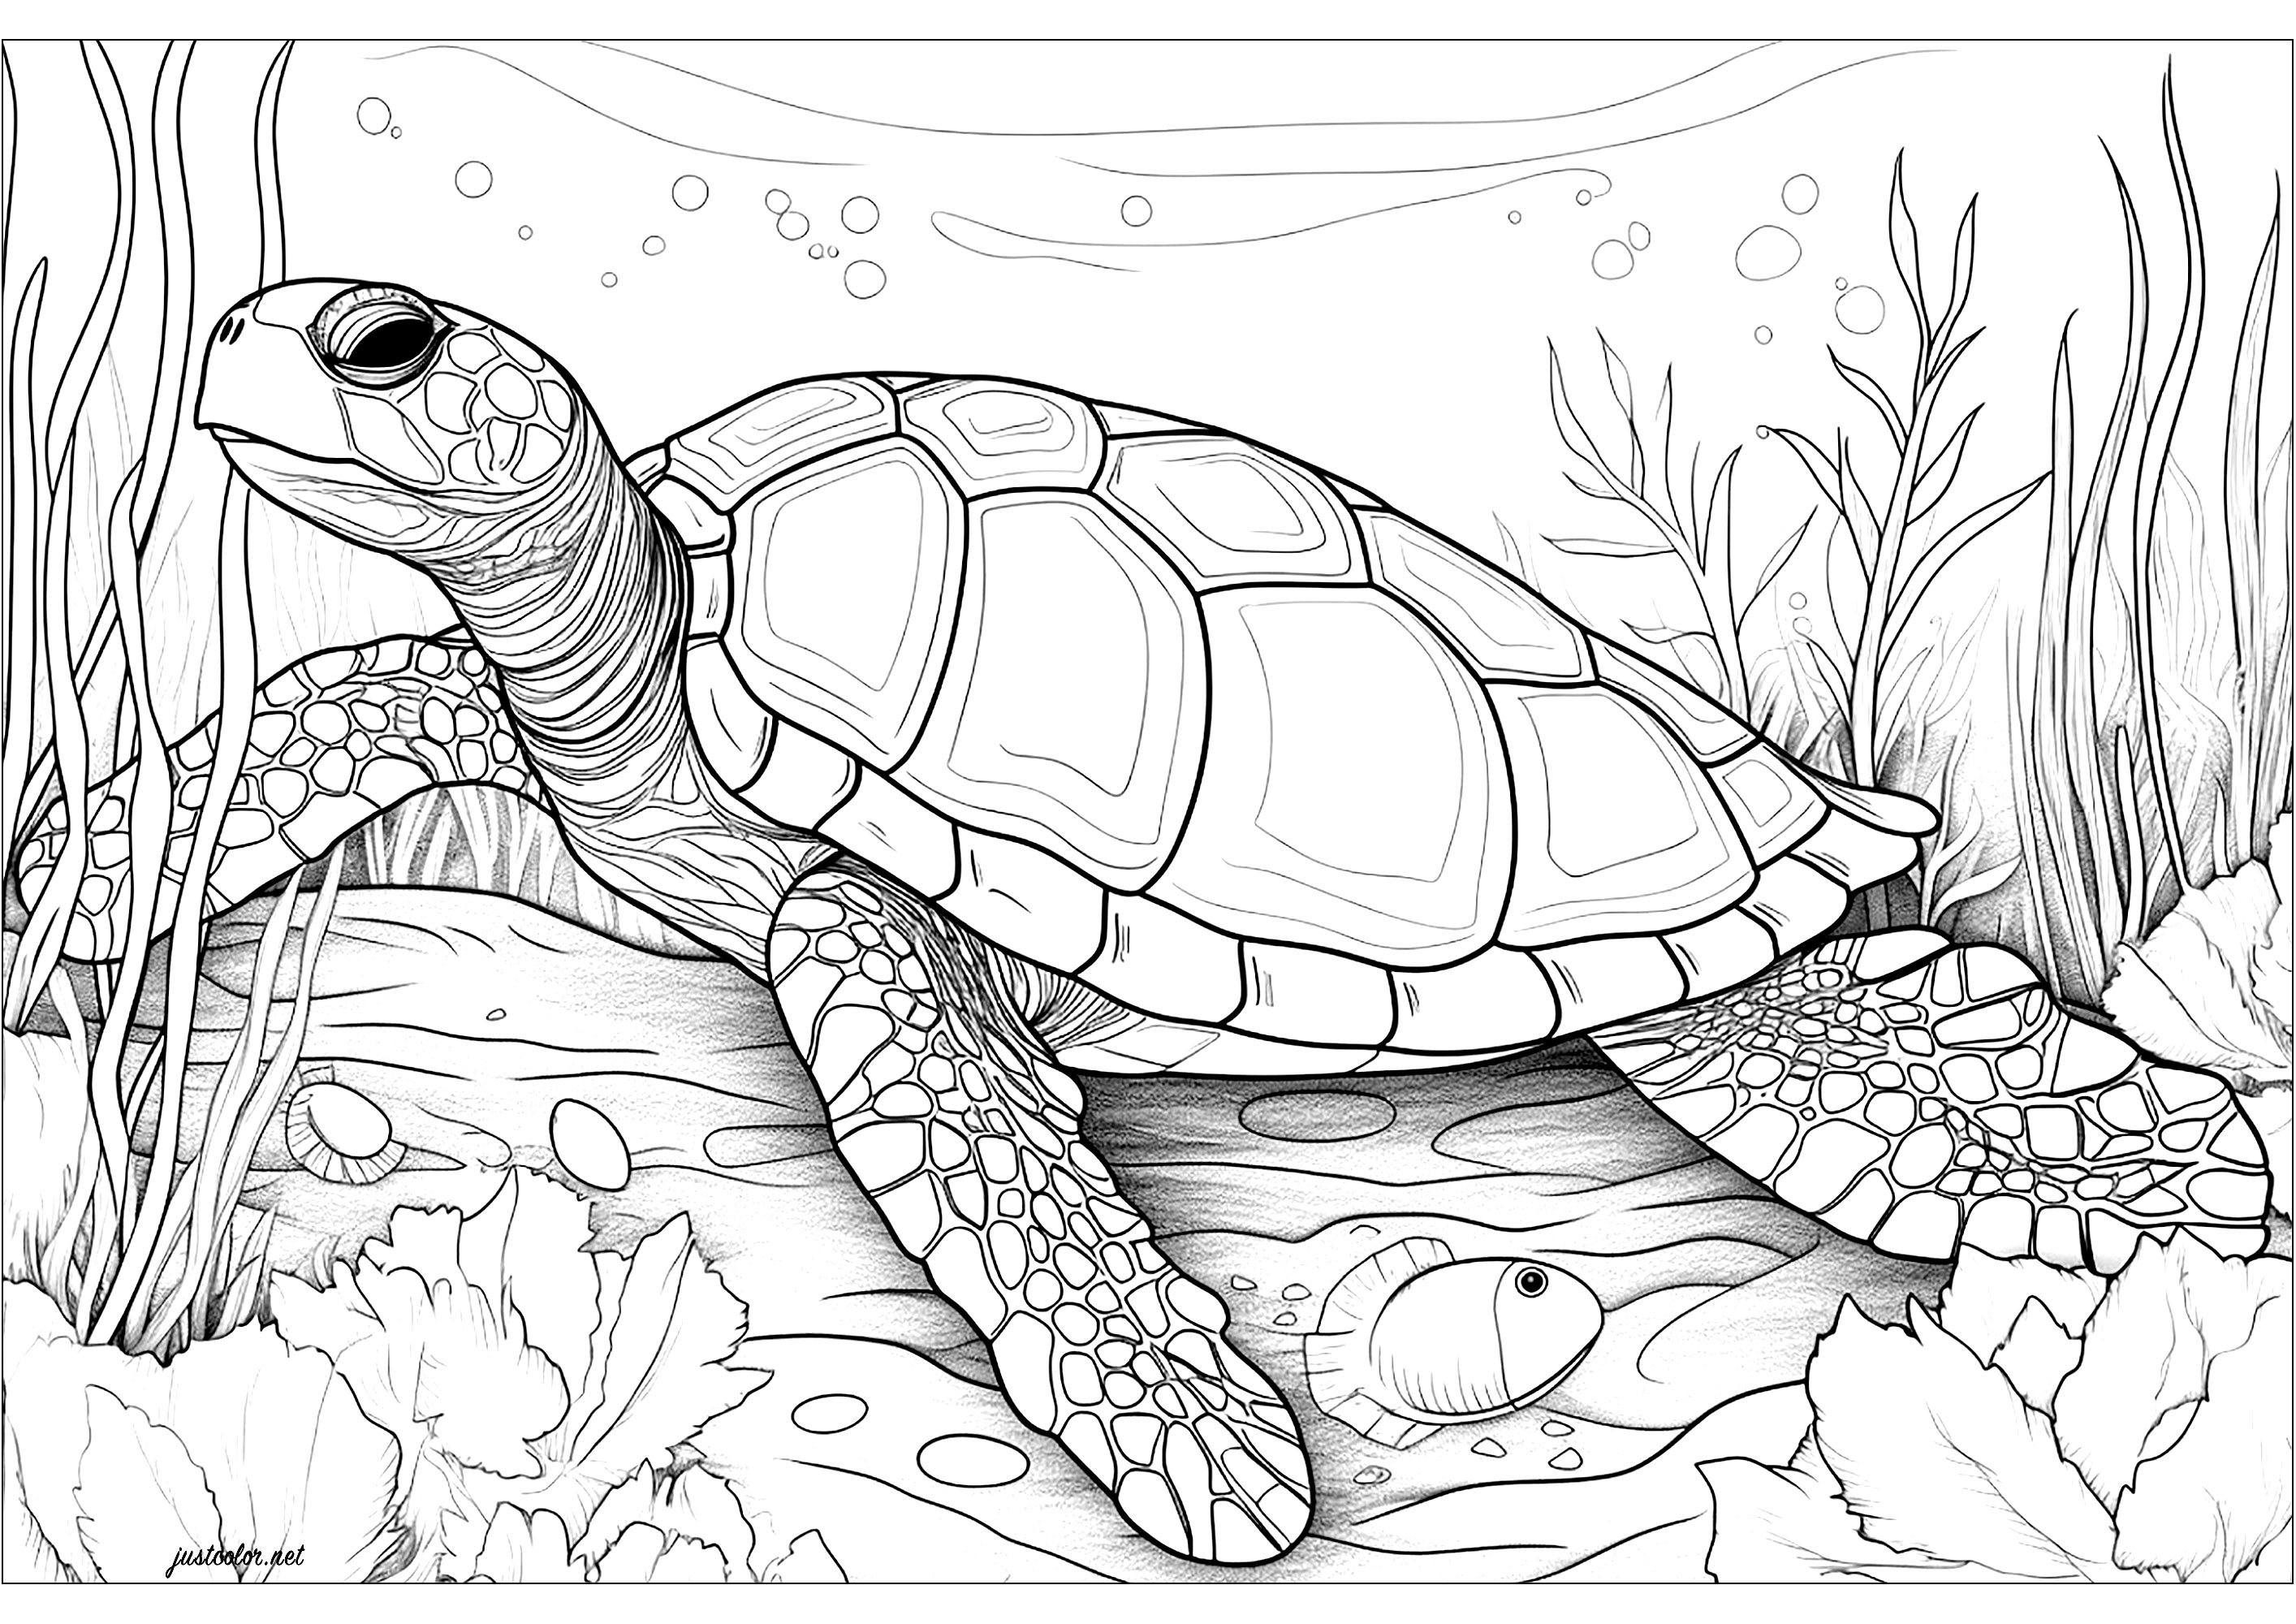 Tartaruga marinha grande. Uma tartaruga marinha muito realista, cabe-lhe a si colorir os pormenores da sua carapaça e escamas. O fundo está repleto de bolhas e de vegetação aquática, o que confere a esta página para colorir um ambiente calmo e sereno.